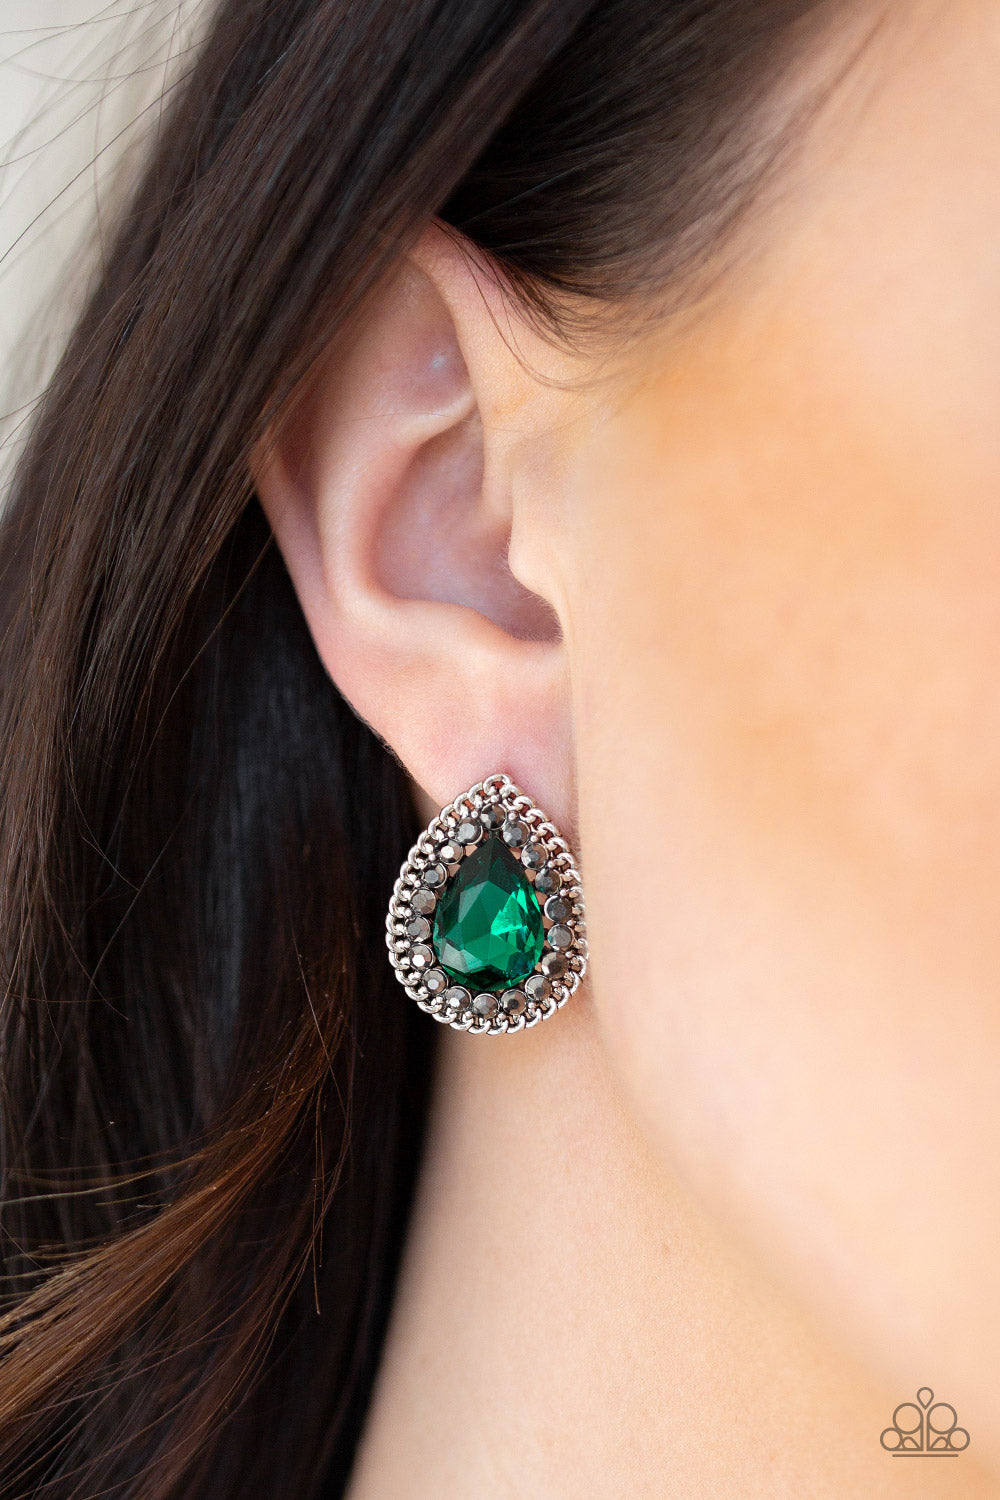 Paparazzi Debutante Debut Green earrings. Get free shipping. #P5PO-GRXX-022XX. Emerald Green Easter